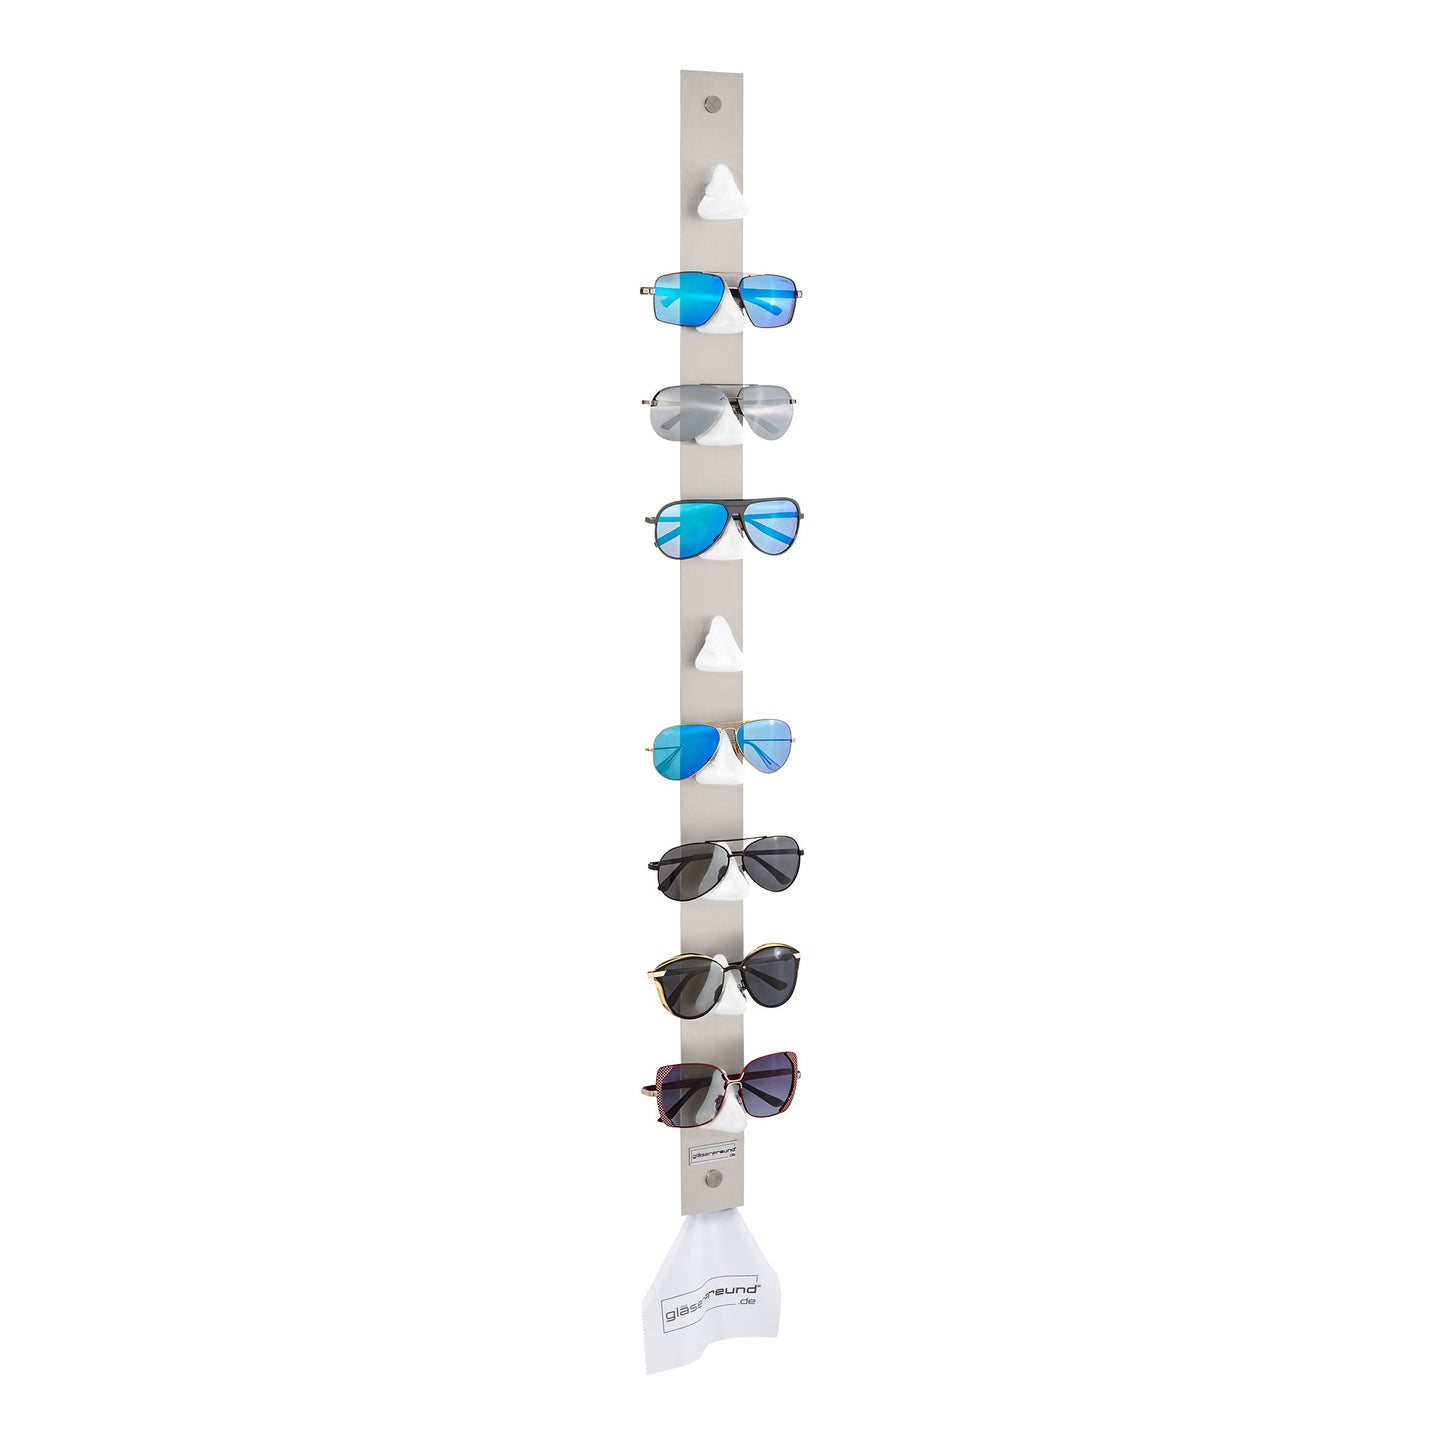 Toni - Brillenorganizer, Brillenhalter, Brillenhalterung, Brillenregal, Brillenständer, Brillenaufbewahrung, Brillengarderobe, Brillenablage und Brillengarage